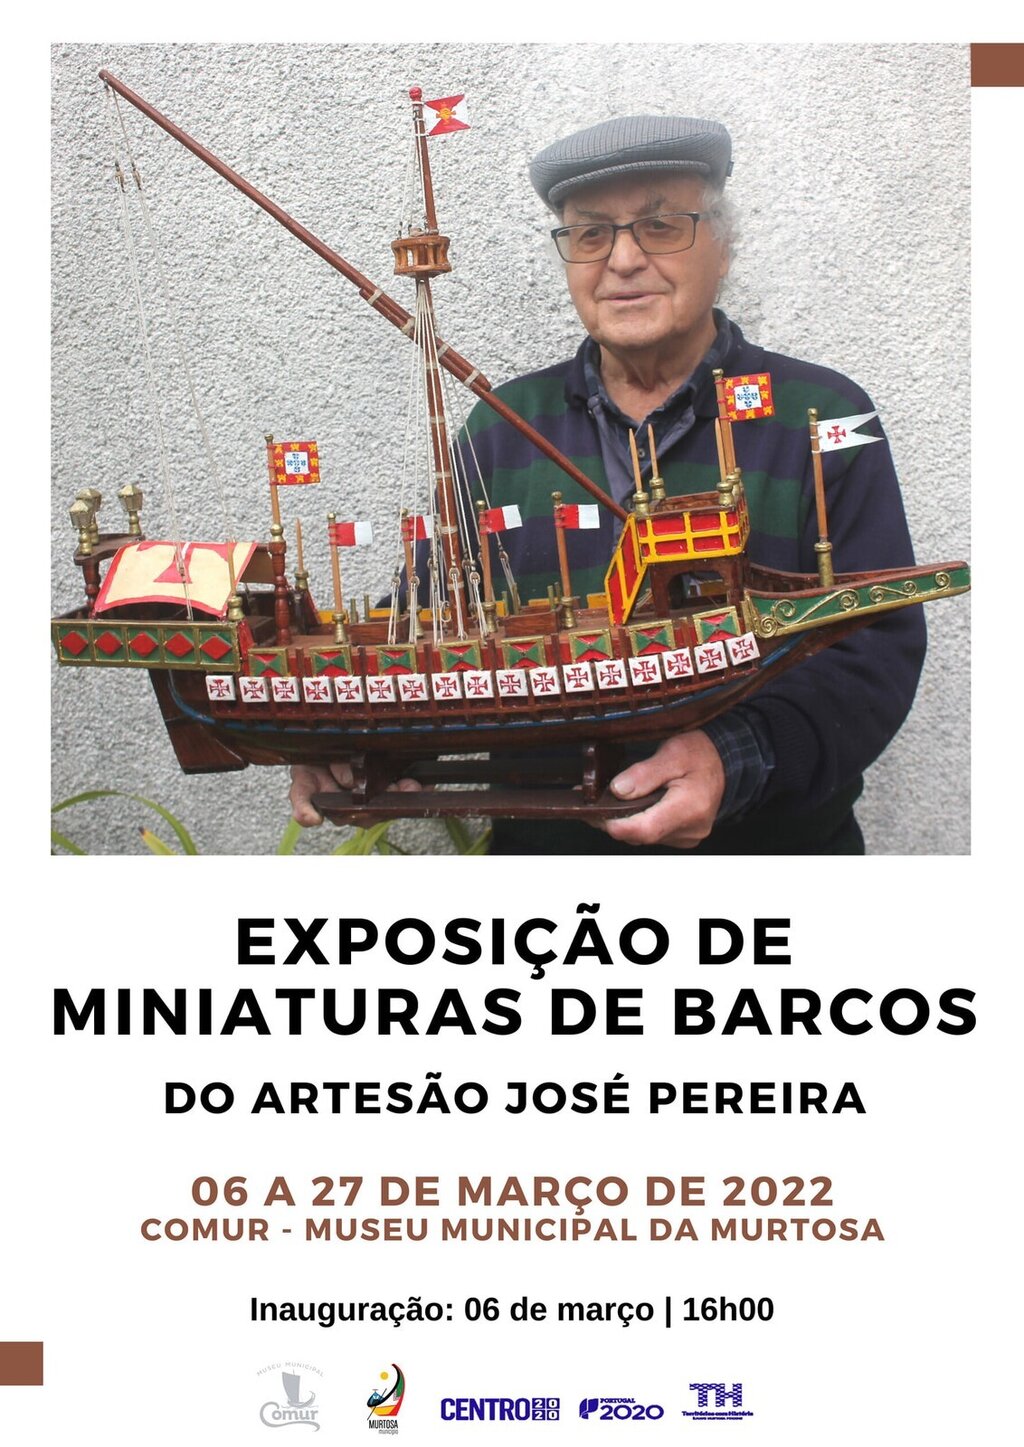 JOSÉ PEREIRA EXPÕE MINIATURAS DE BARCOS NA COMUR-MUSEU MUNICIPAL DA MURTOSA